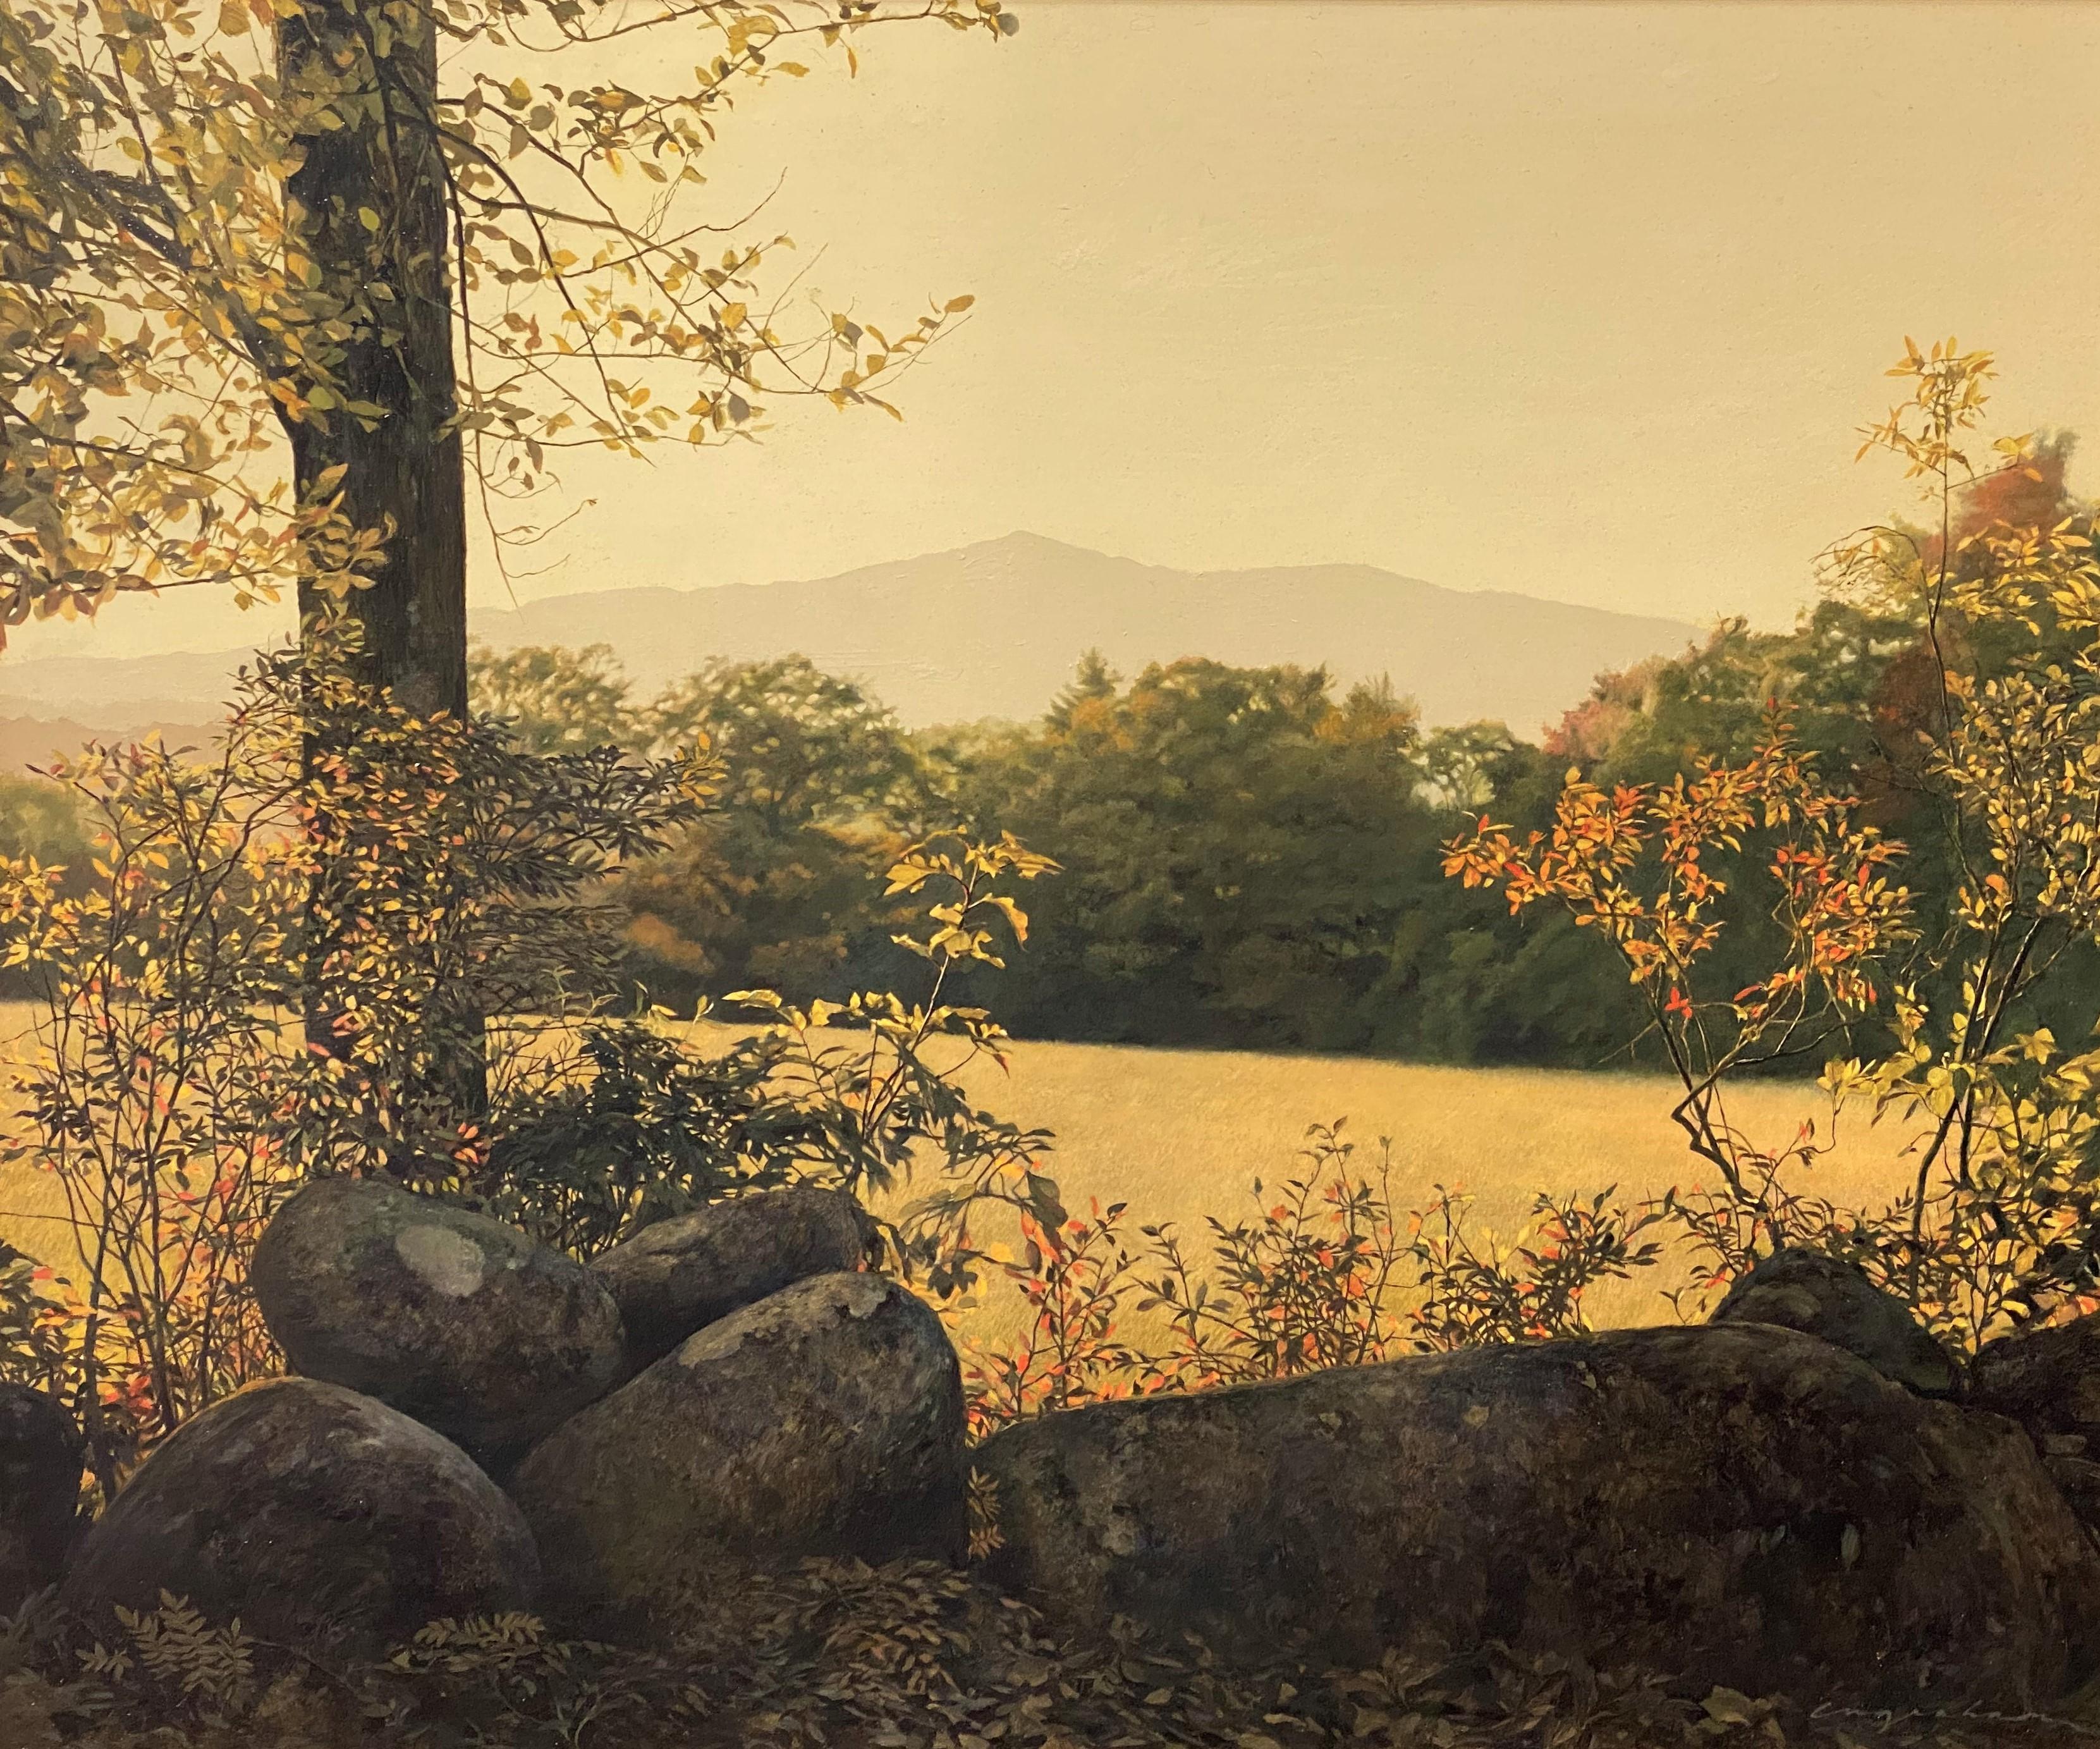 Après-midi doré, Mont Monadnock, NH - Painting de Erick Ingraham